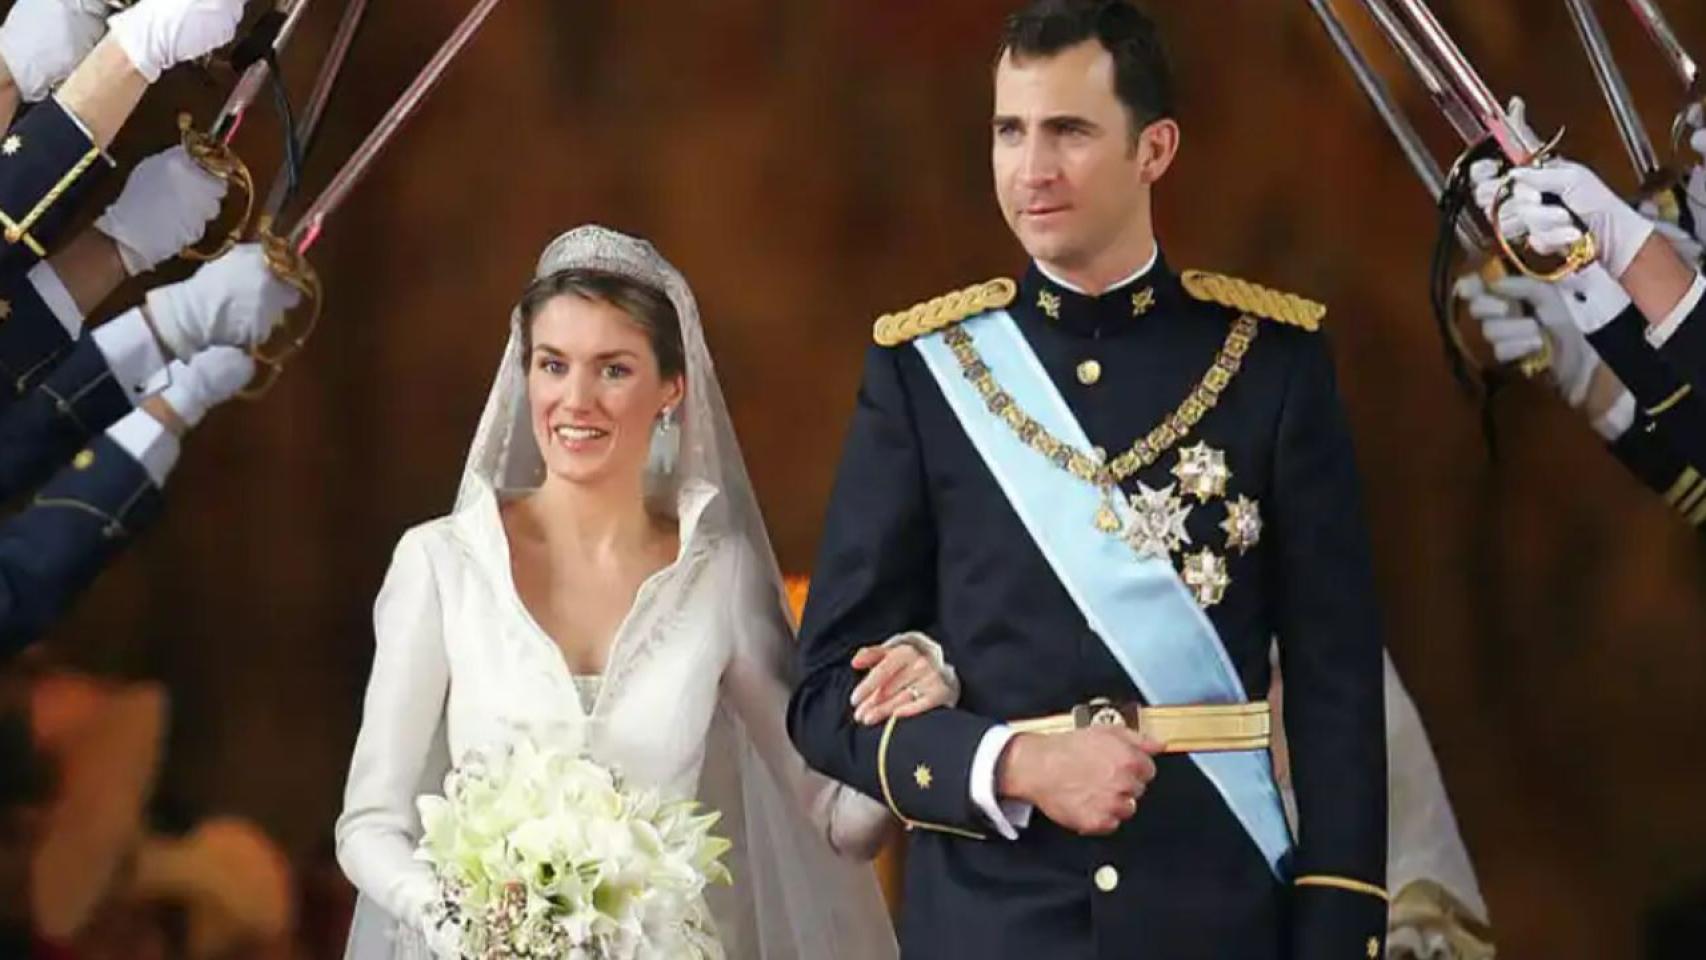 La boda de los Reyes, en 2014.